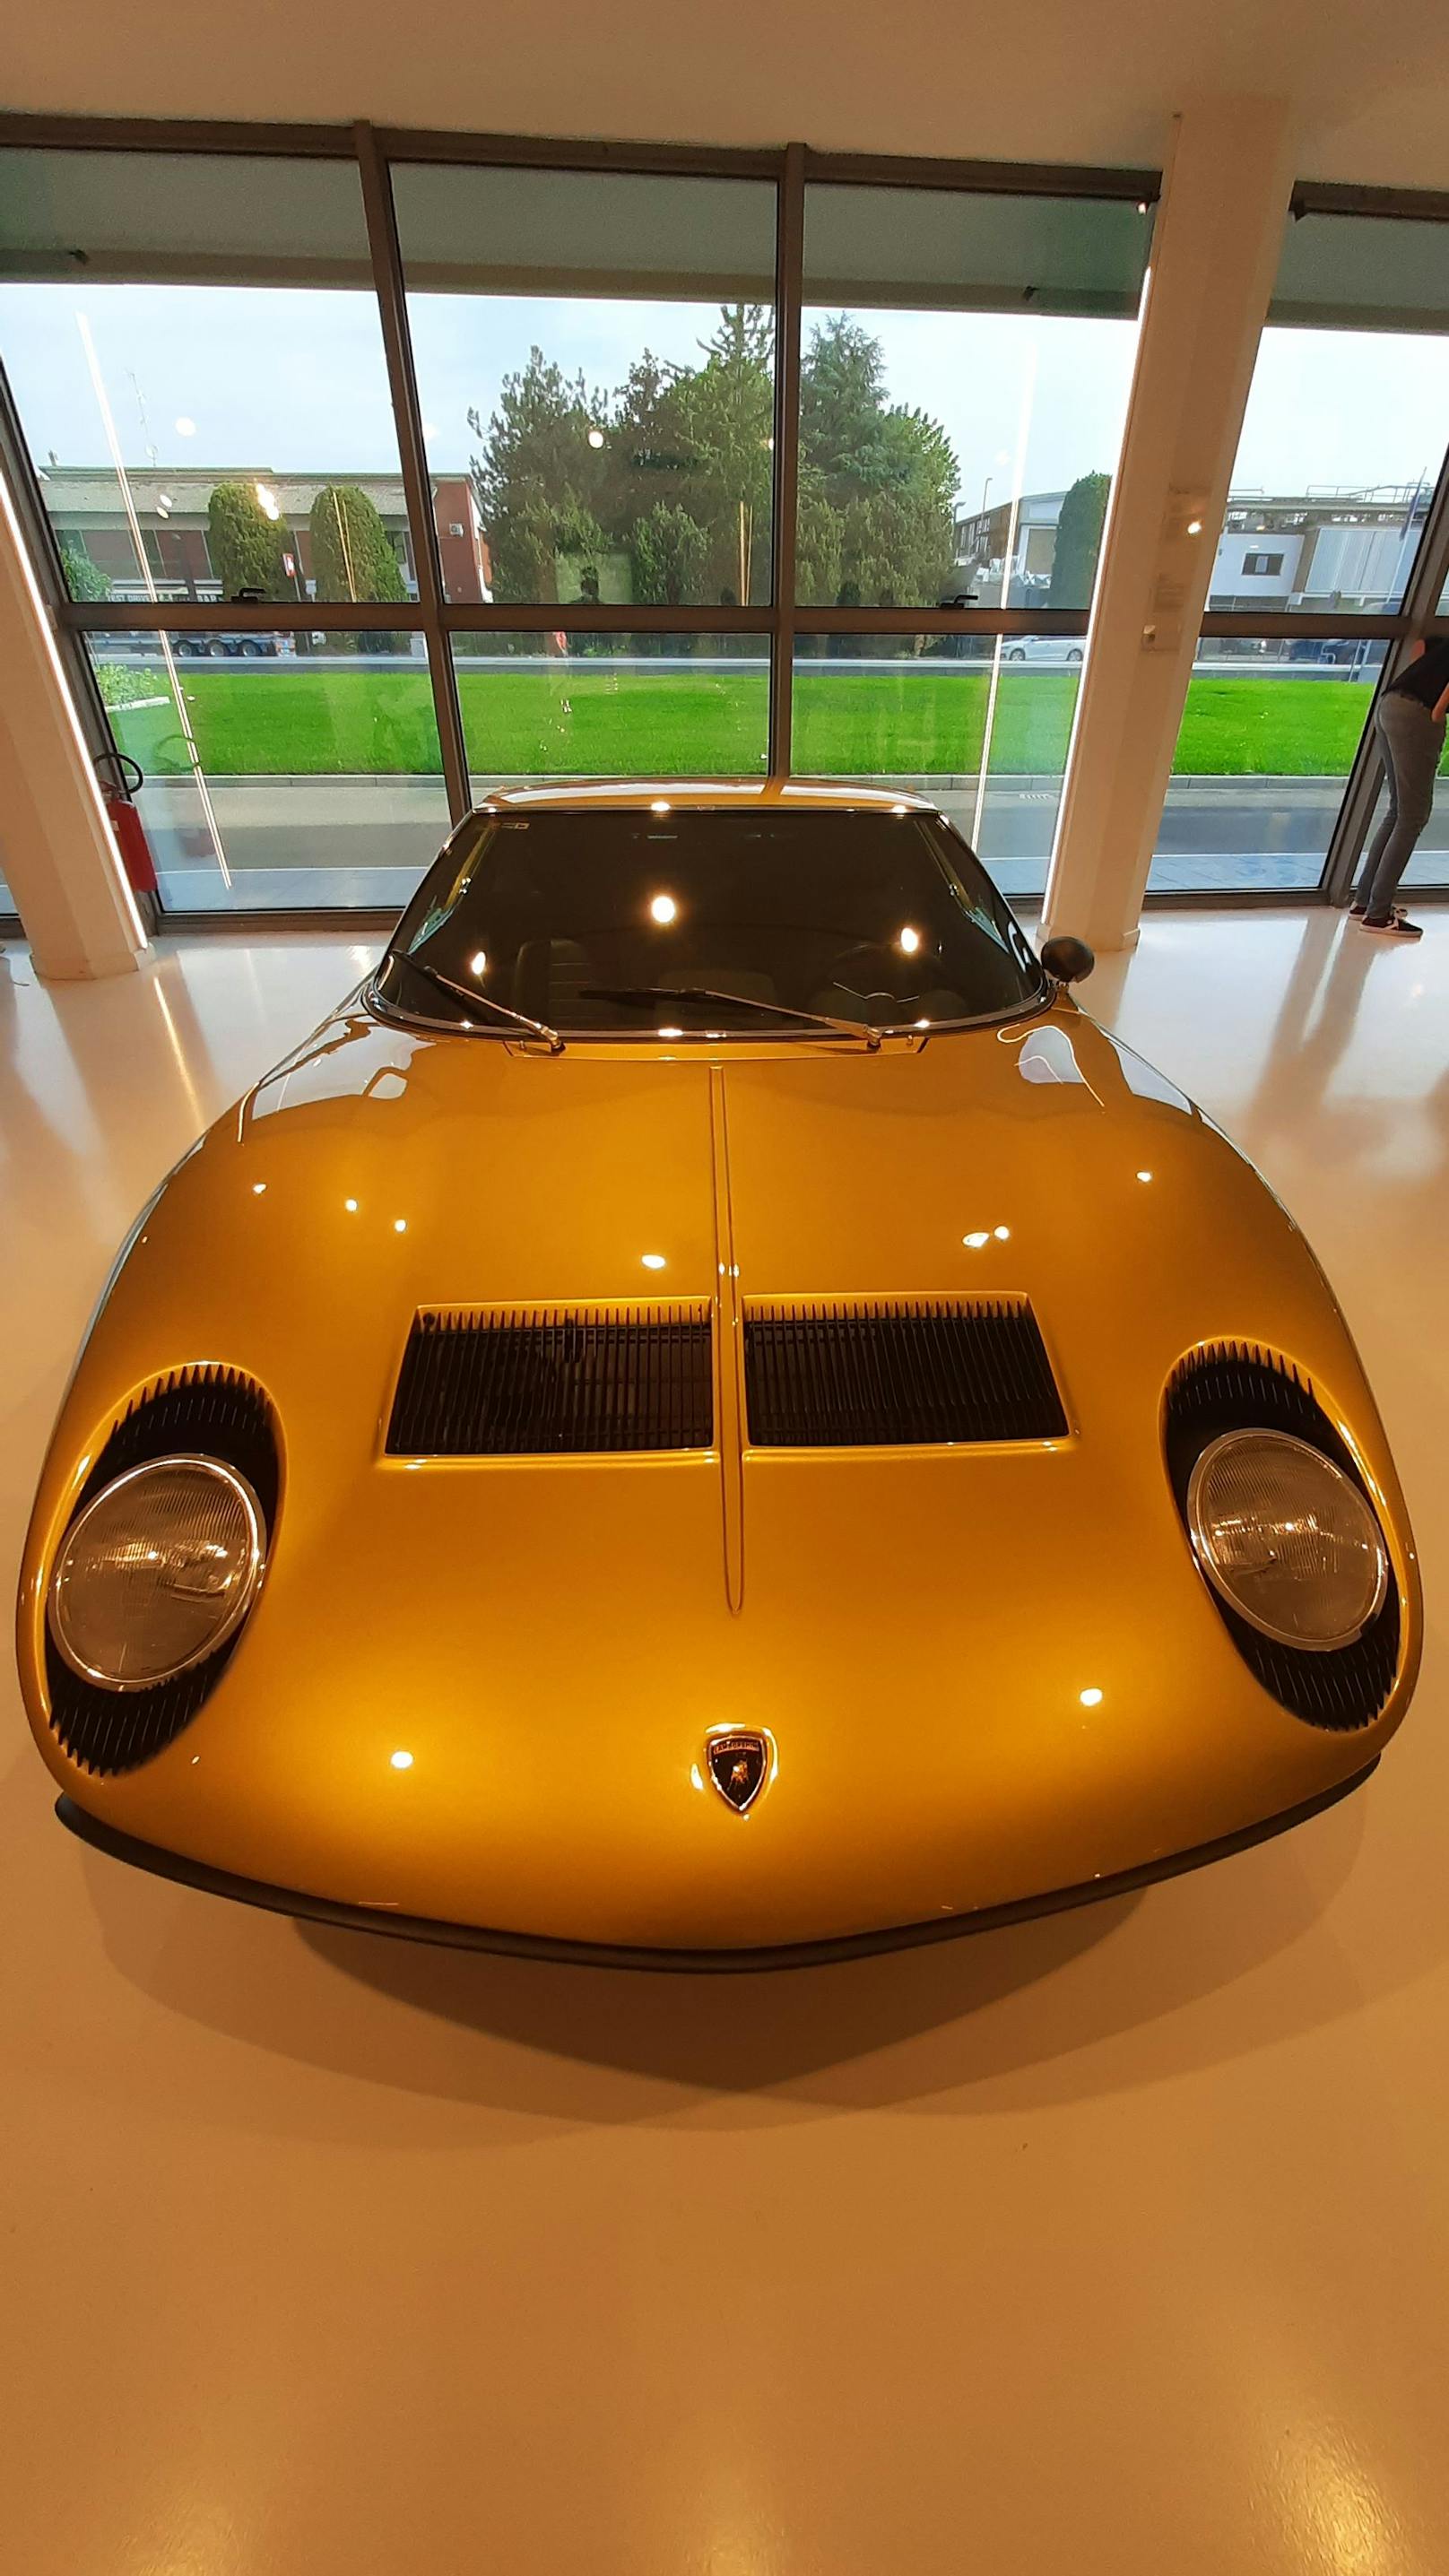 1966 kam der Miura auf den Markt und zählte mit seinem V12-Aggregat zu den schnellsten Fahrzeugen seiner Zeit. Sein Namensgeber war Antonio Miura, der den Kampfstier Murciélago zur Zucht verwendete.&nbsp;